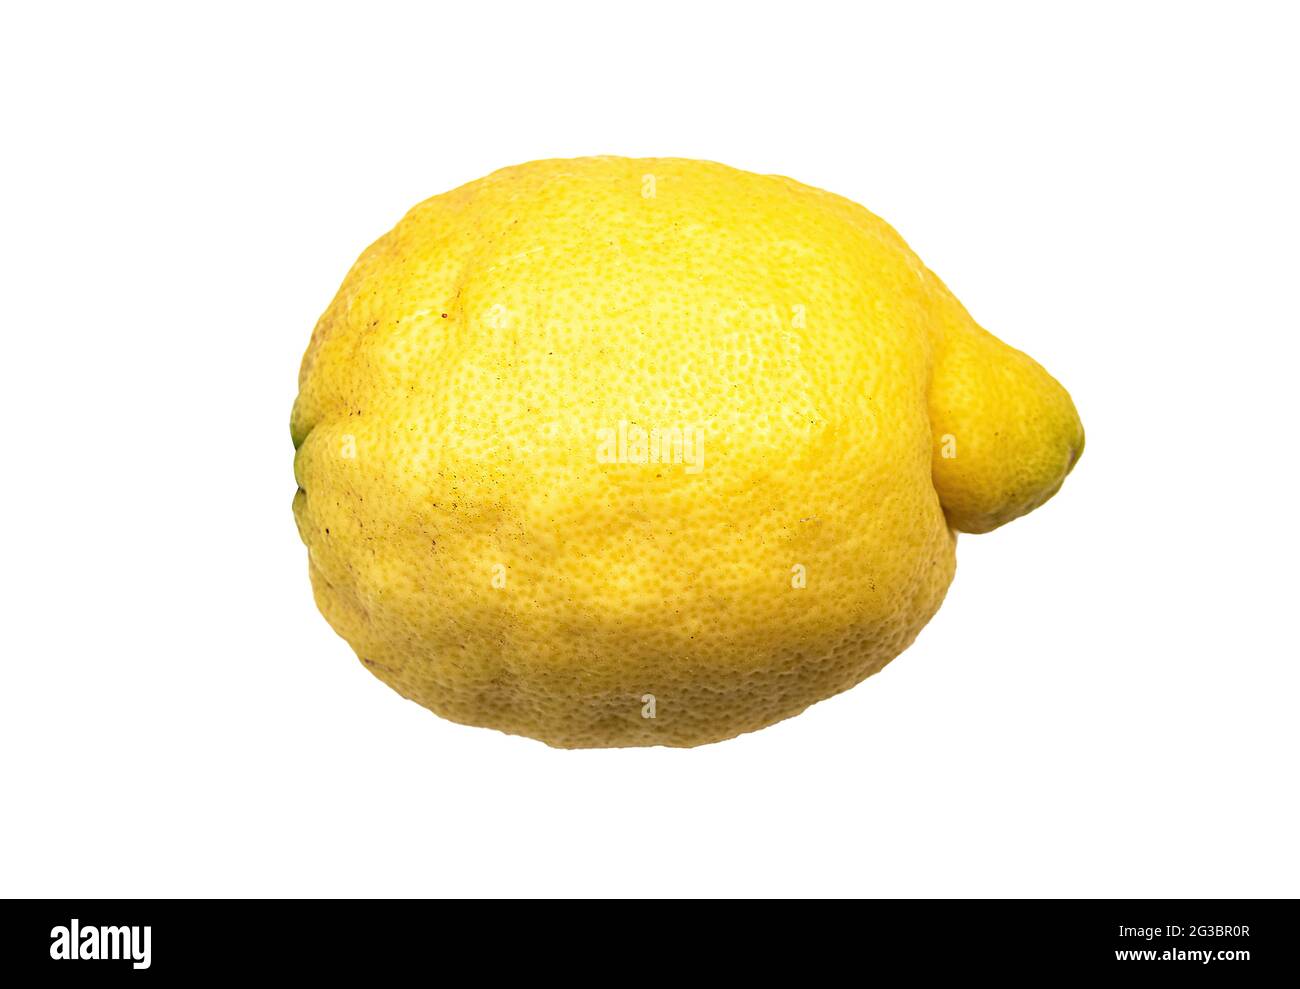 citron unique d'amalfi, sfusato amalfitano, isolé sur fond blanc Banque D'Images